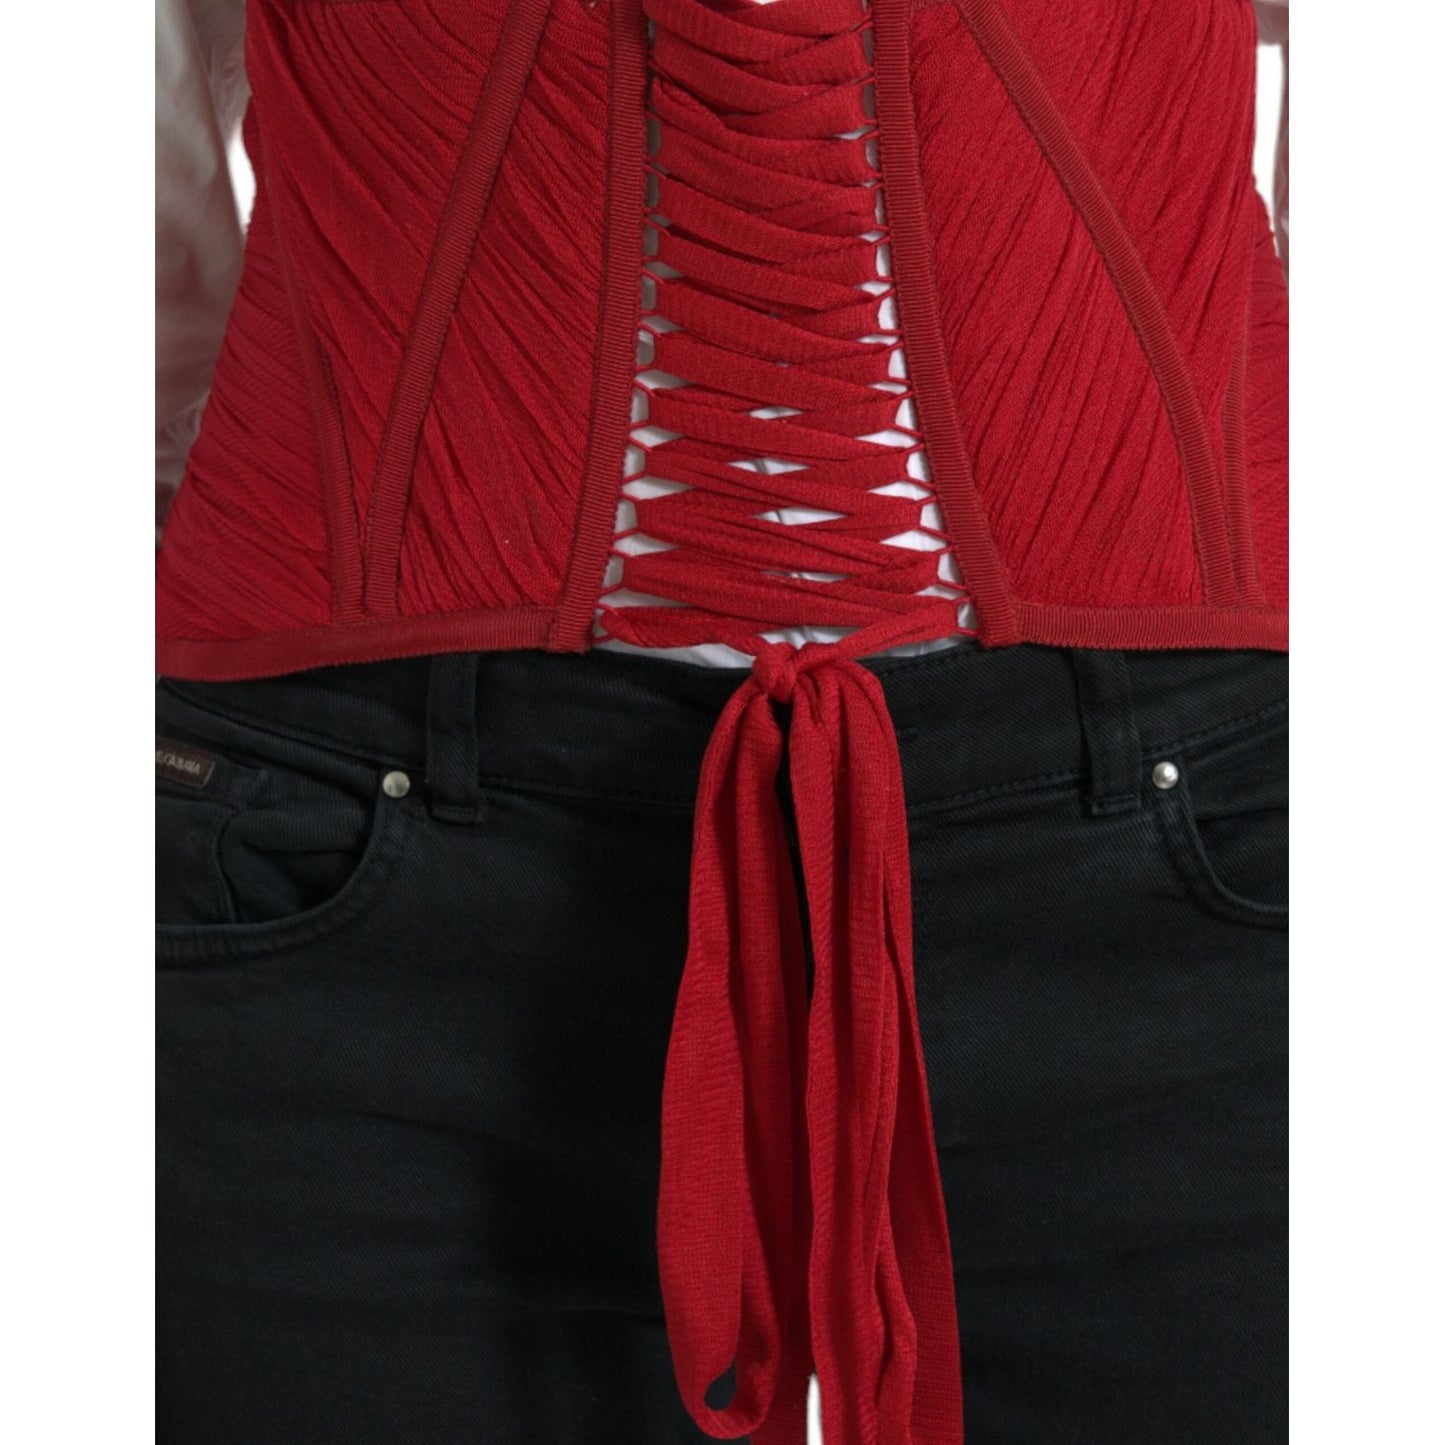 Dolce & Gabbana Silk Corset Waist Belt in Fiery Red red-silk-belt-waist-lace-up-strap-corset